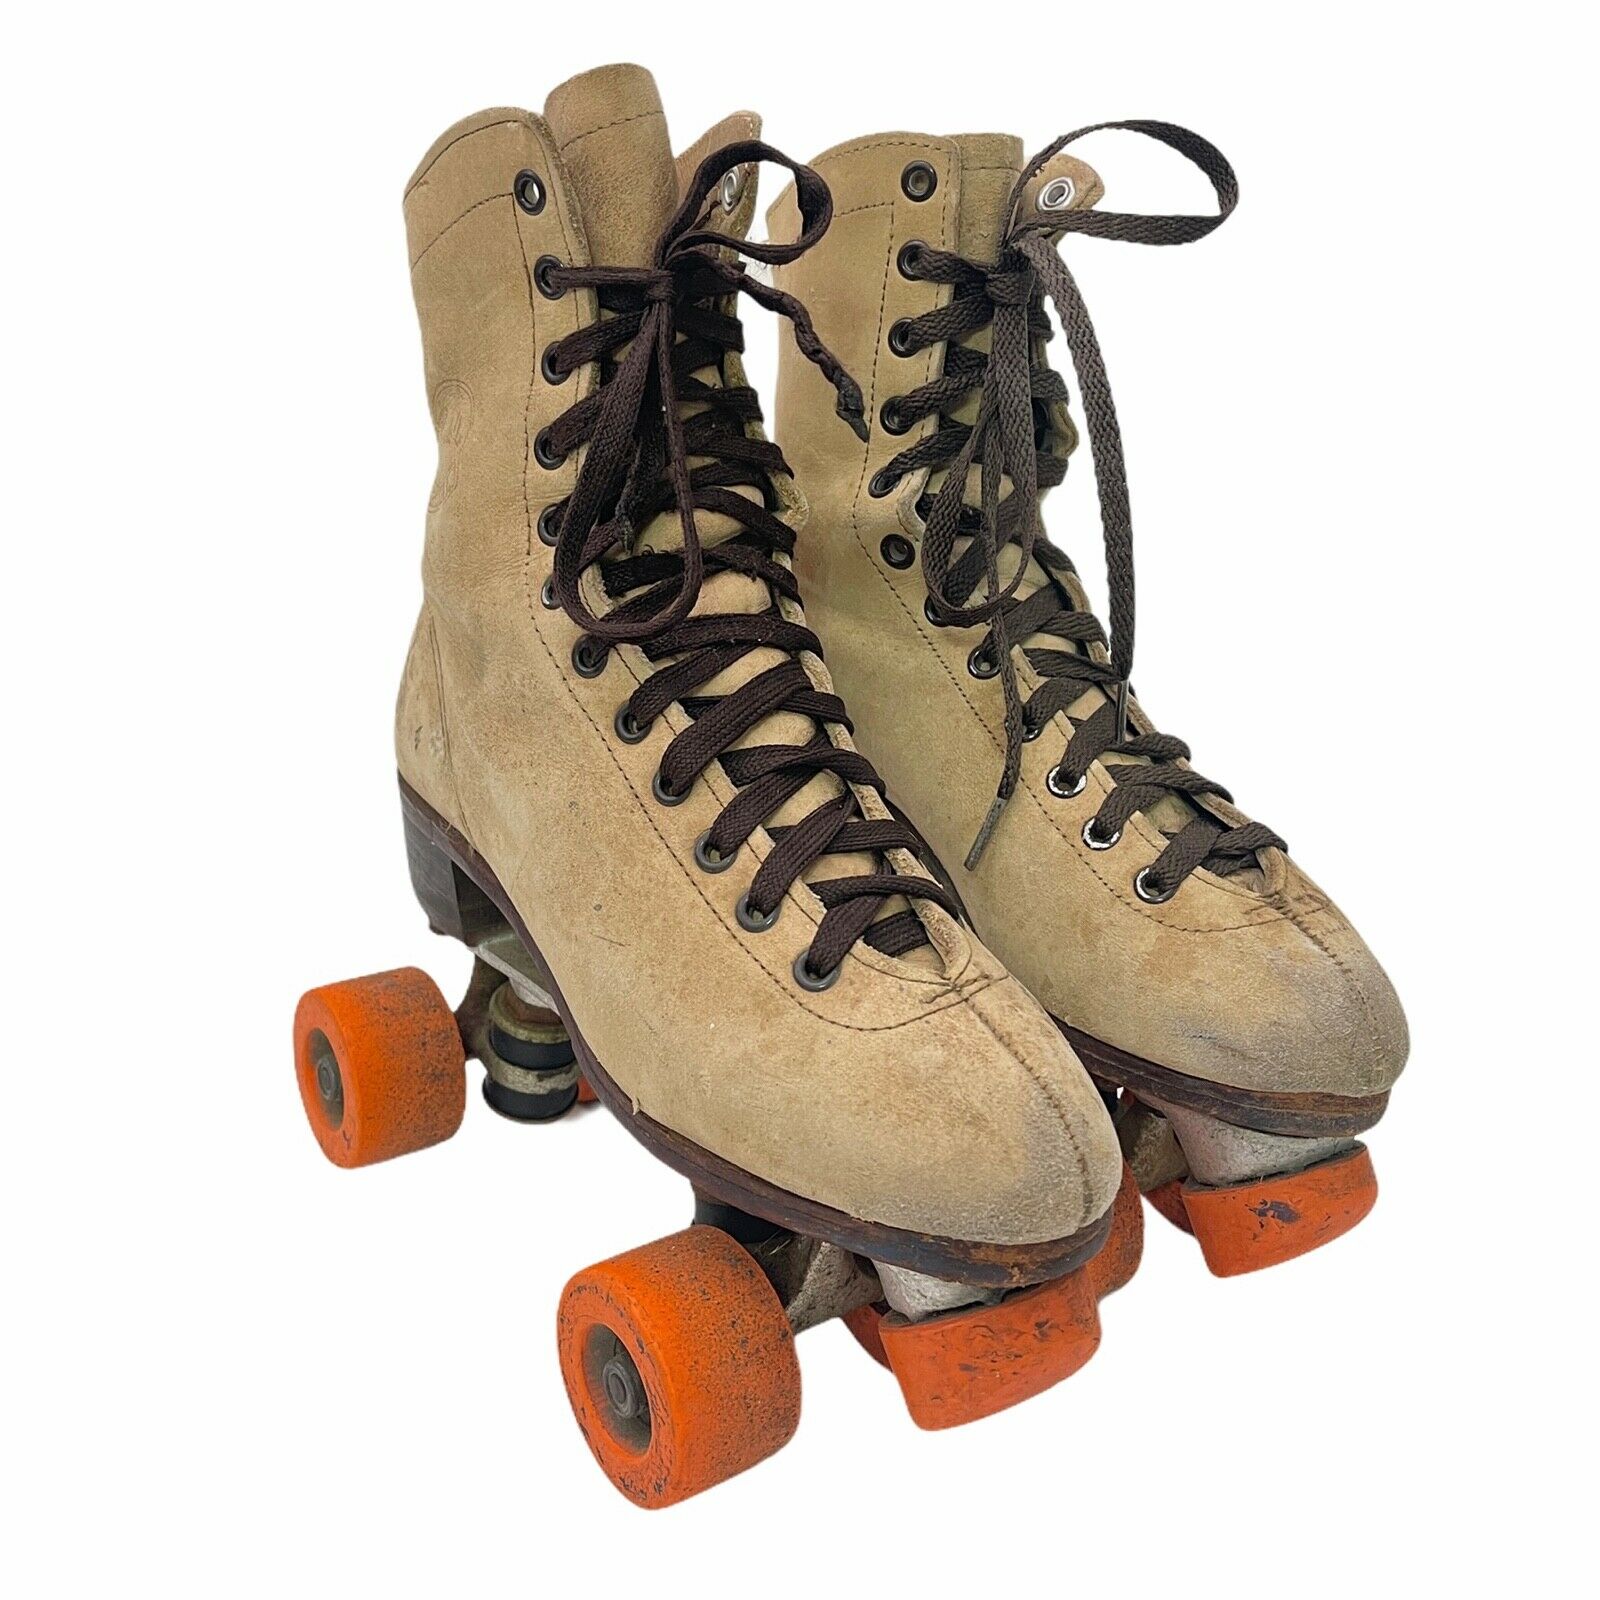 Vintage Riedell Roller Skates Mens Size 6 Suede Rental Skates #8